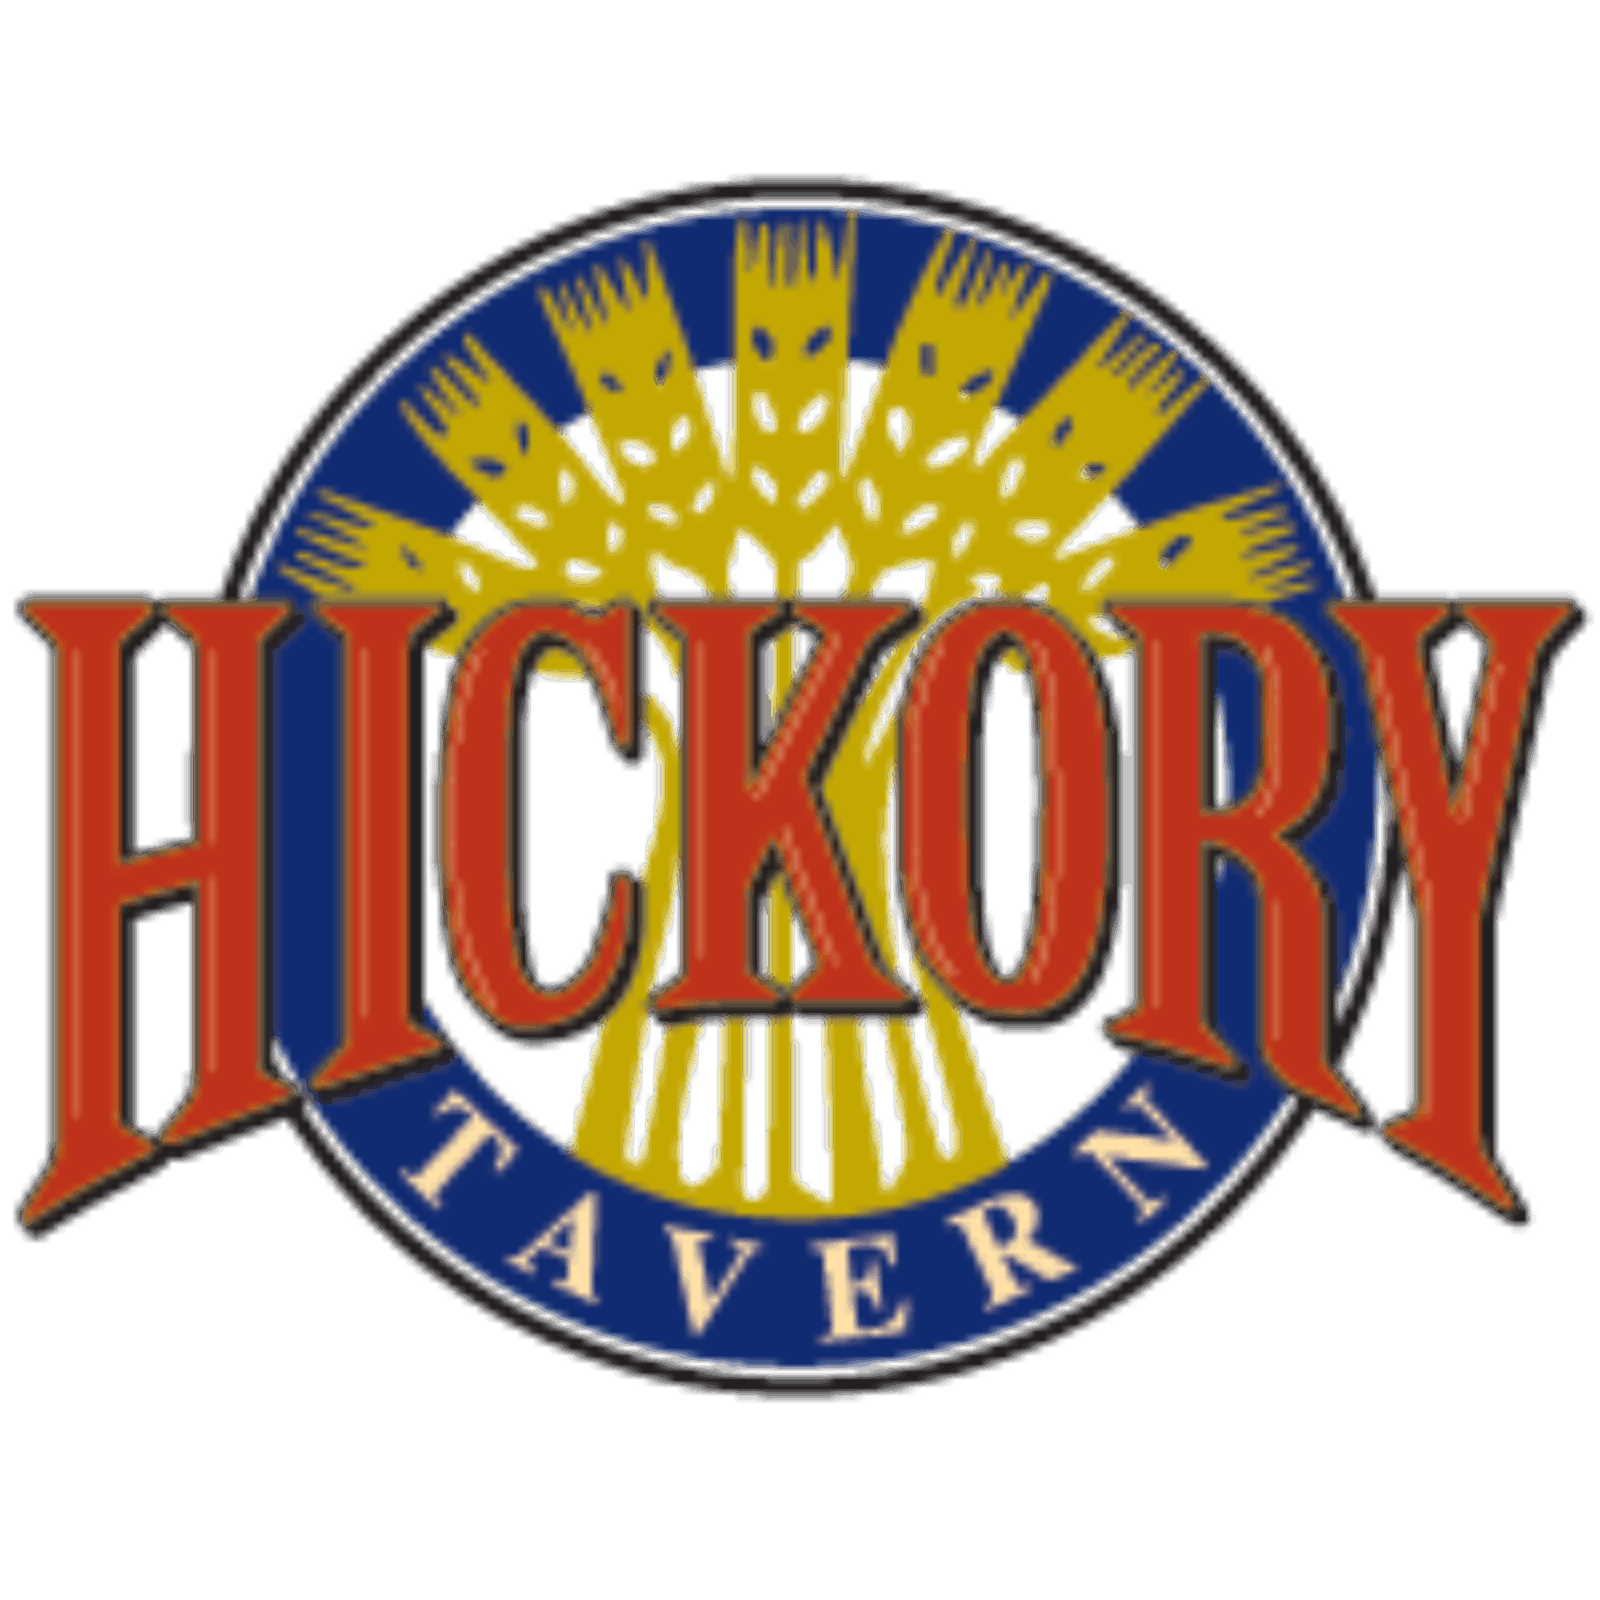 Hickory 